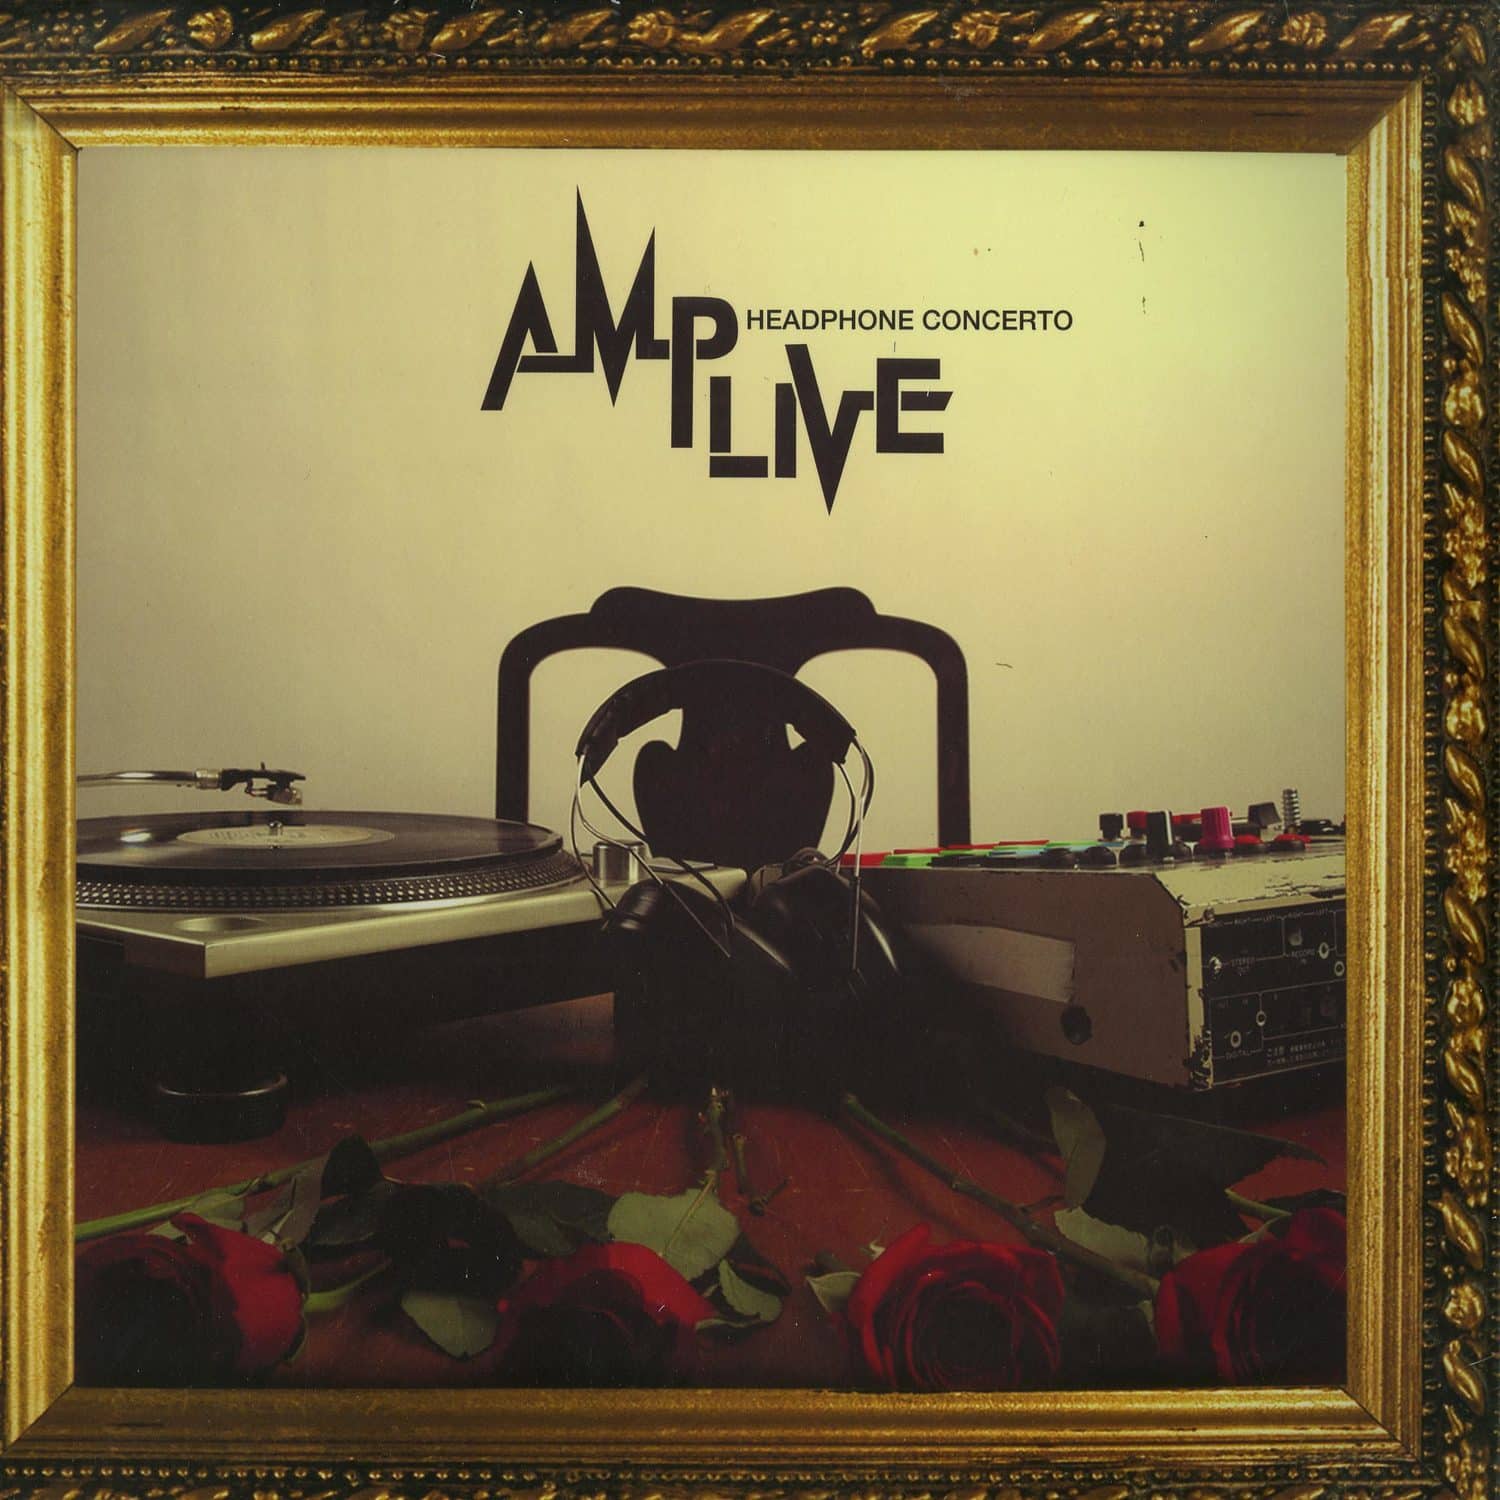 Amp Live - HEADPHONE CONCERTO 